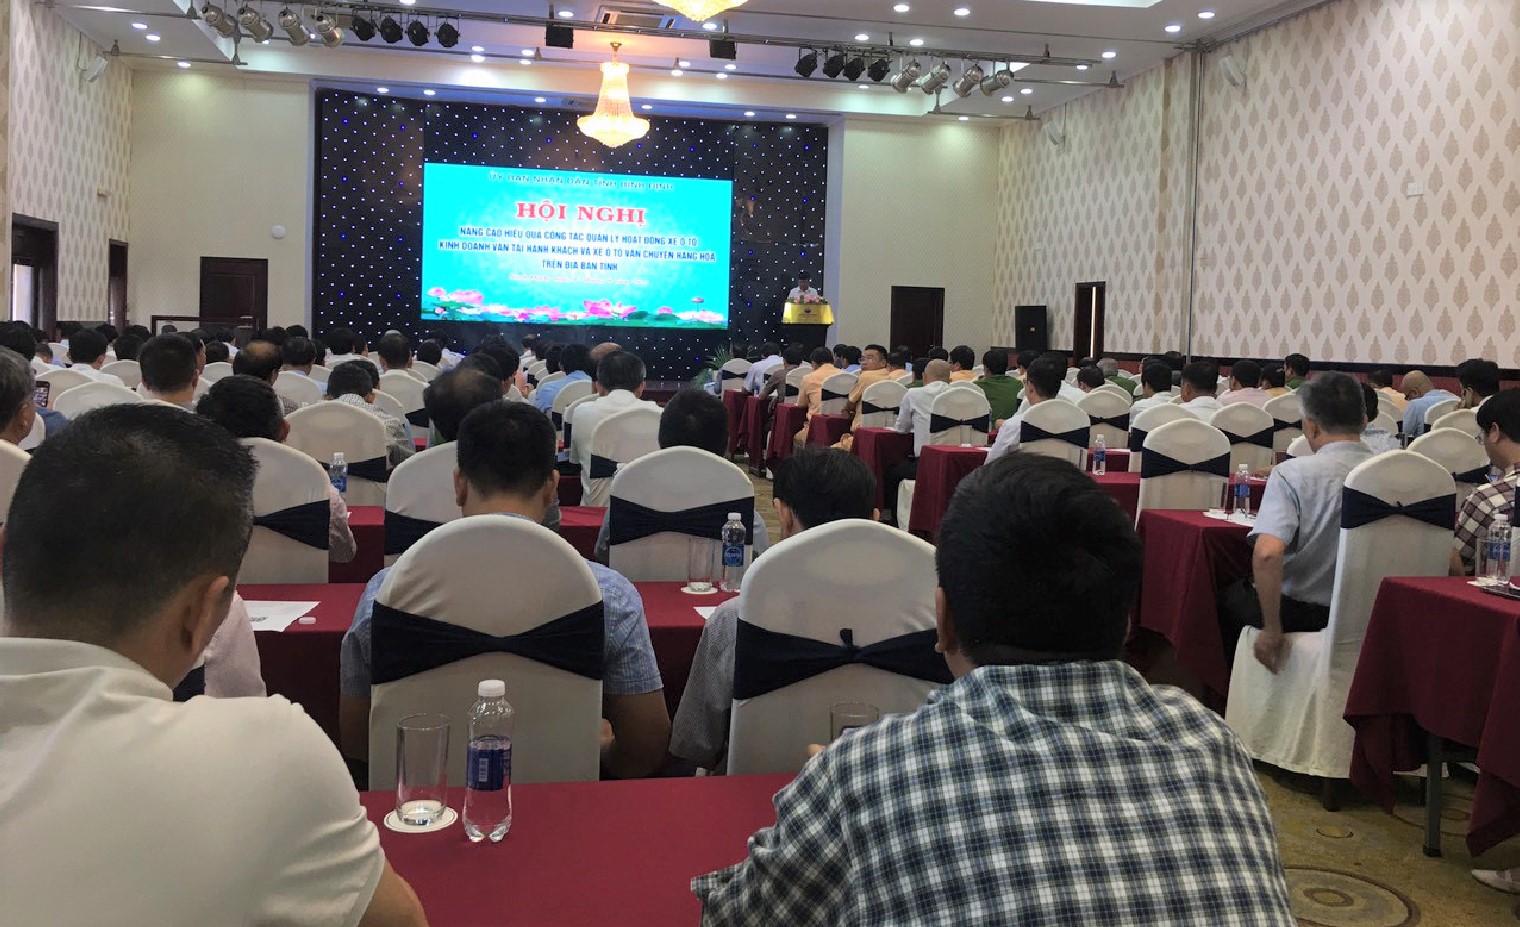 Elcom giới thiệu eWIM tại Hội nghị về kiểm soát tải trọng xe tỉnh Bình Định